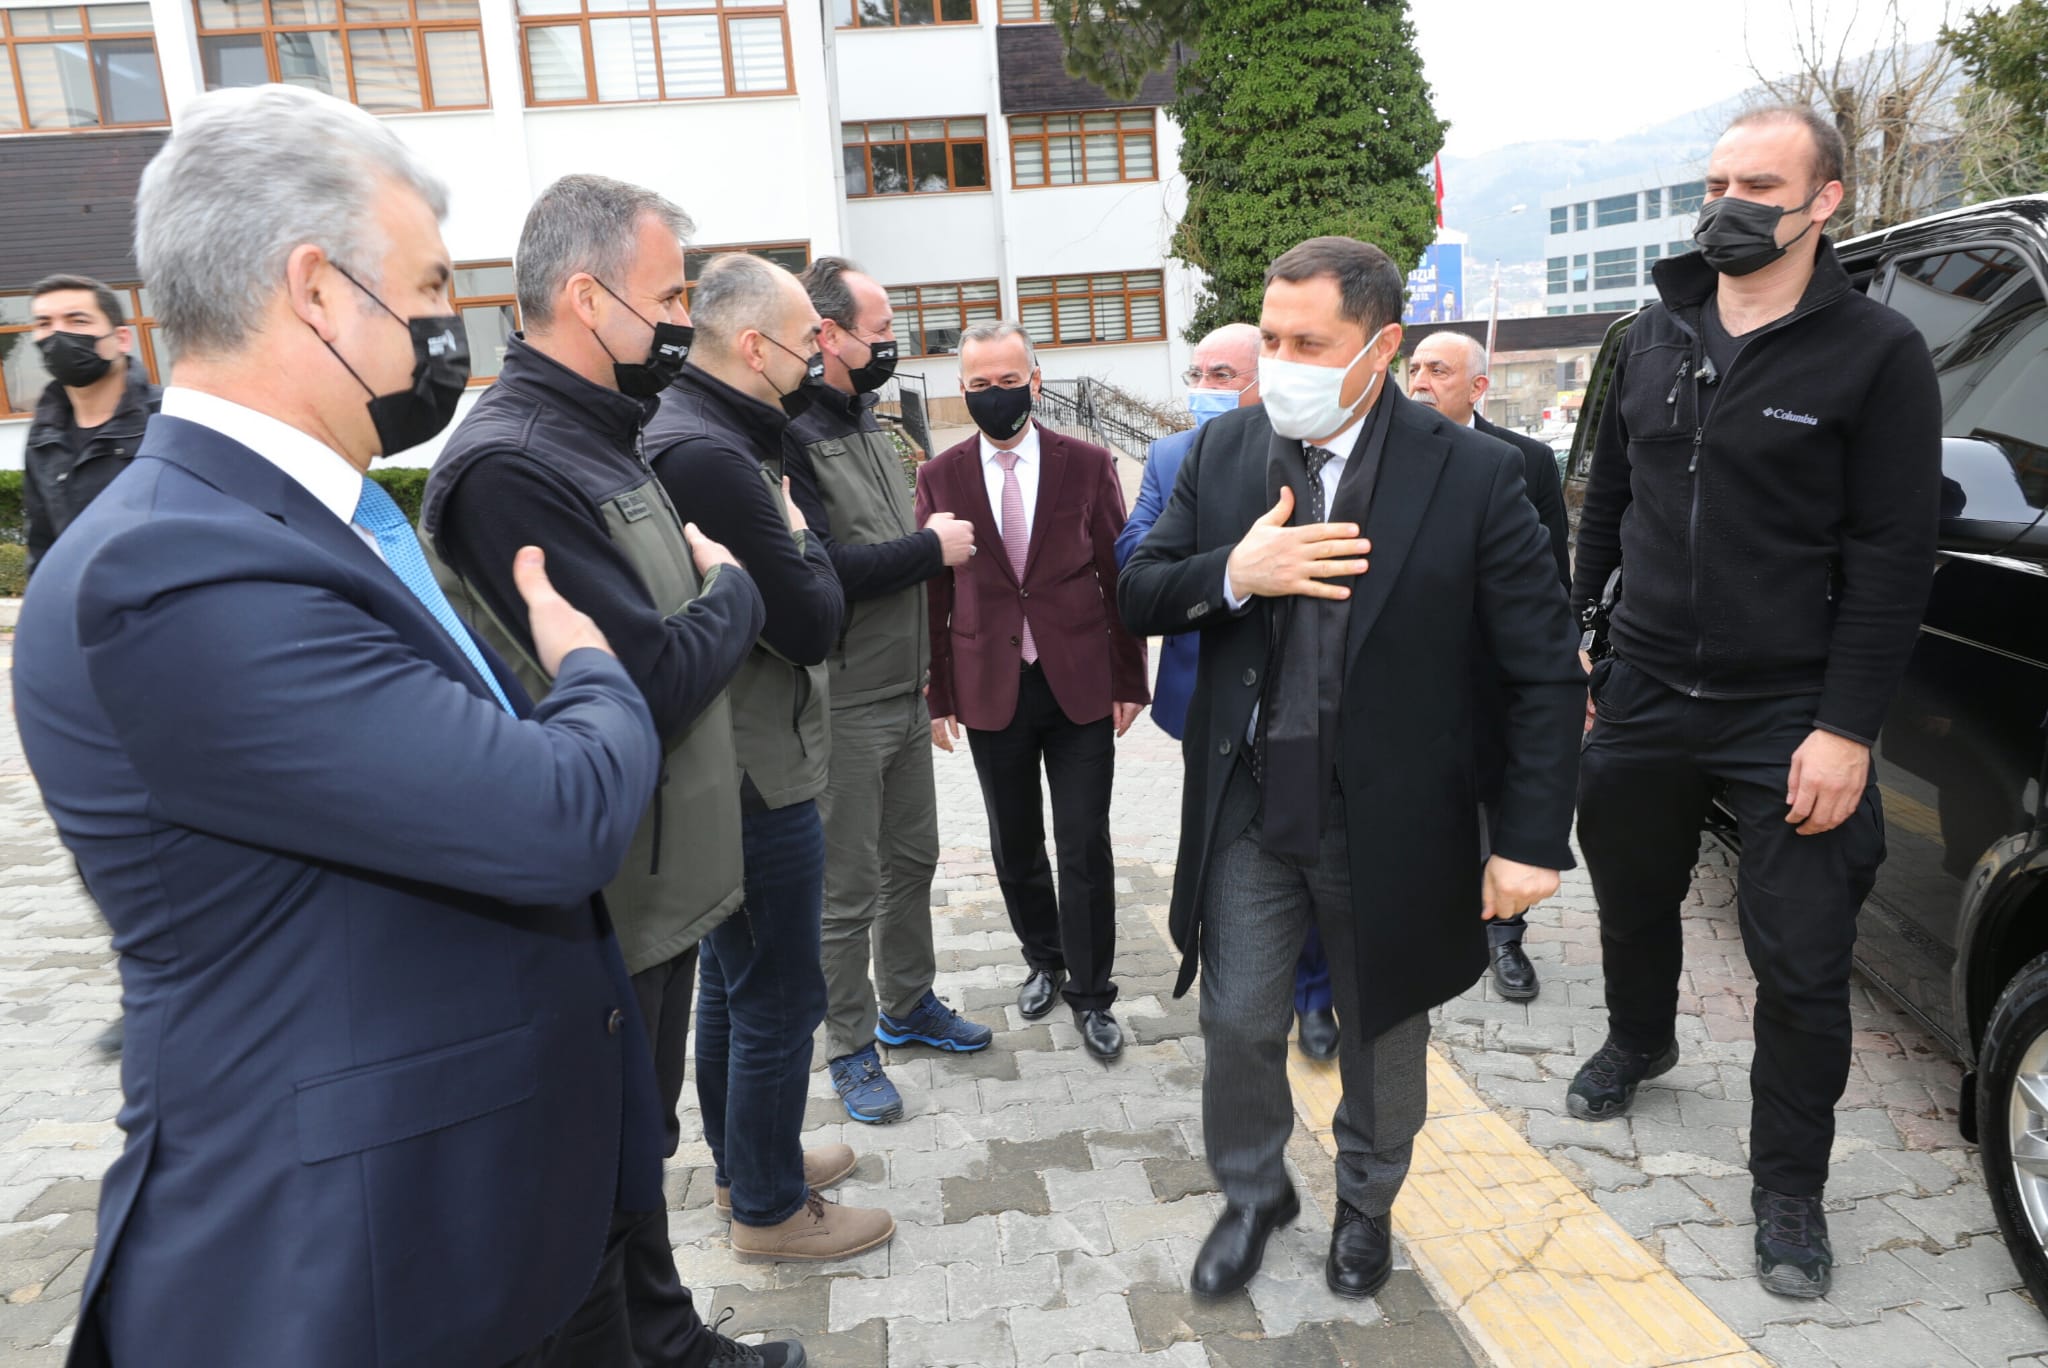 Amasya Valisi Mustafa MASATLI, Orman Bölge Müdürlüğünün Araç Parkına 3 Yeni İş Makinesinin Dahil Edildiği Törene Katıldı